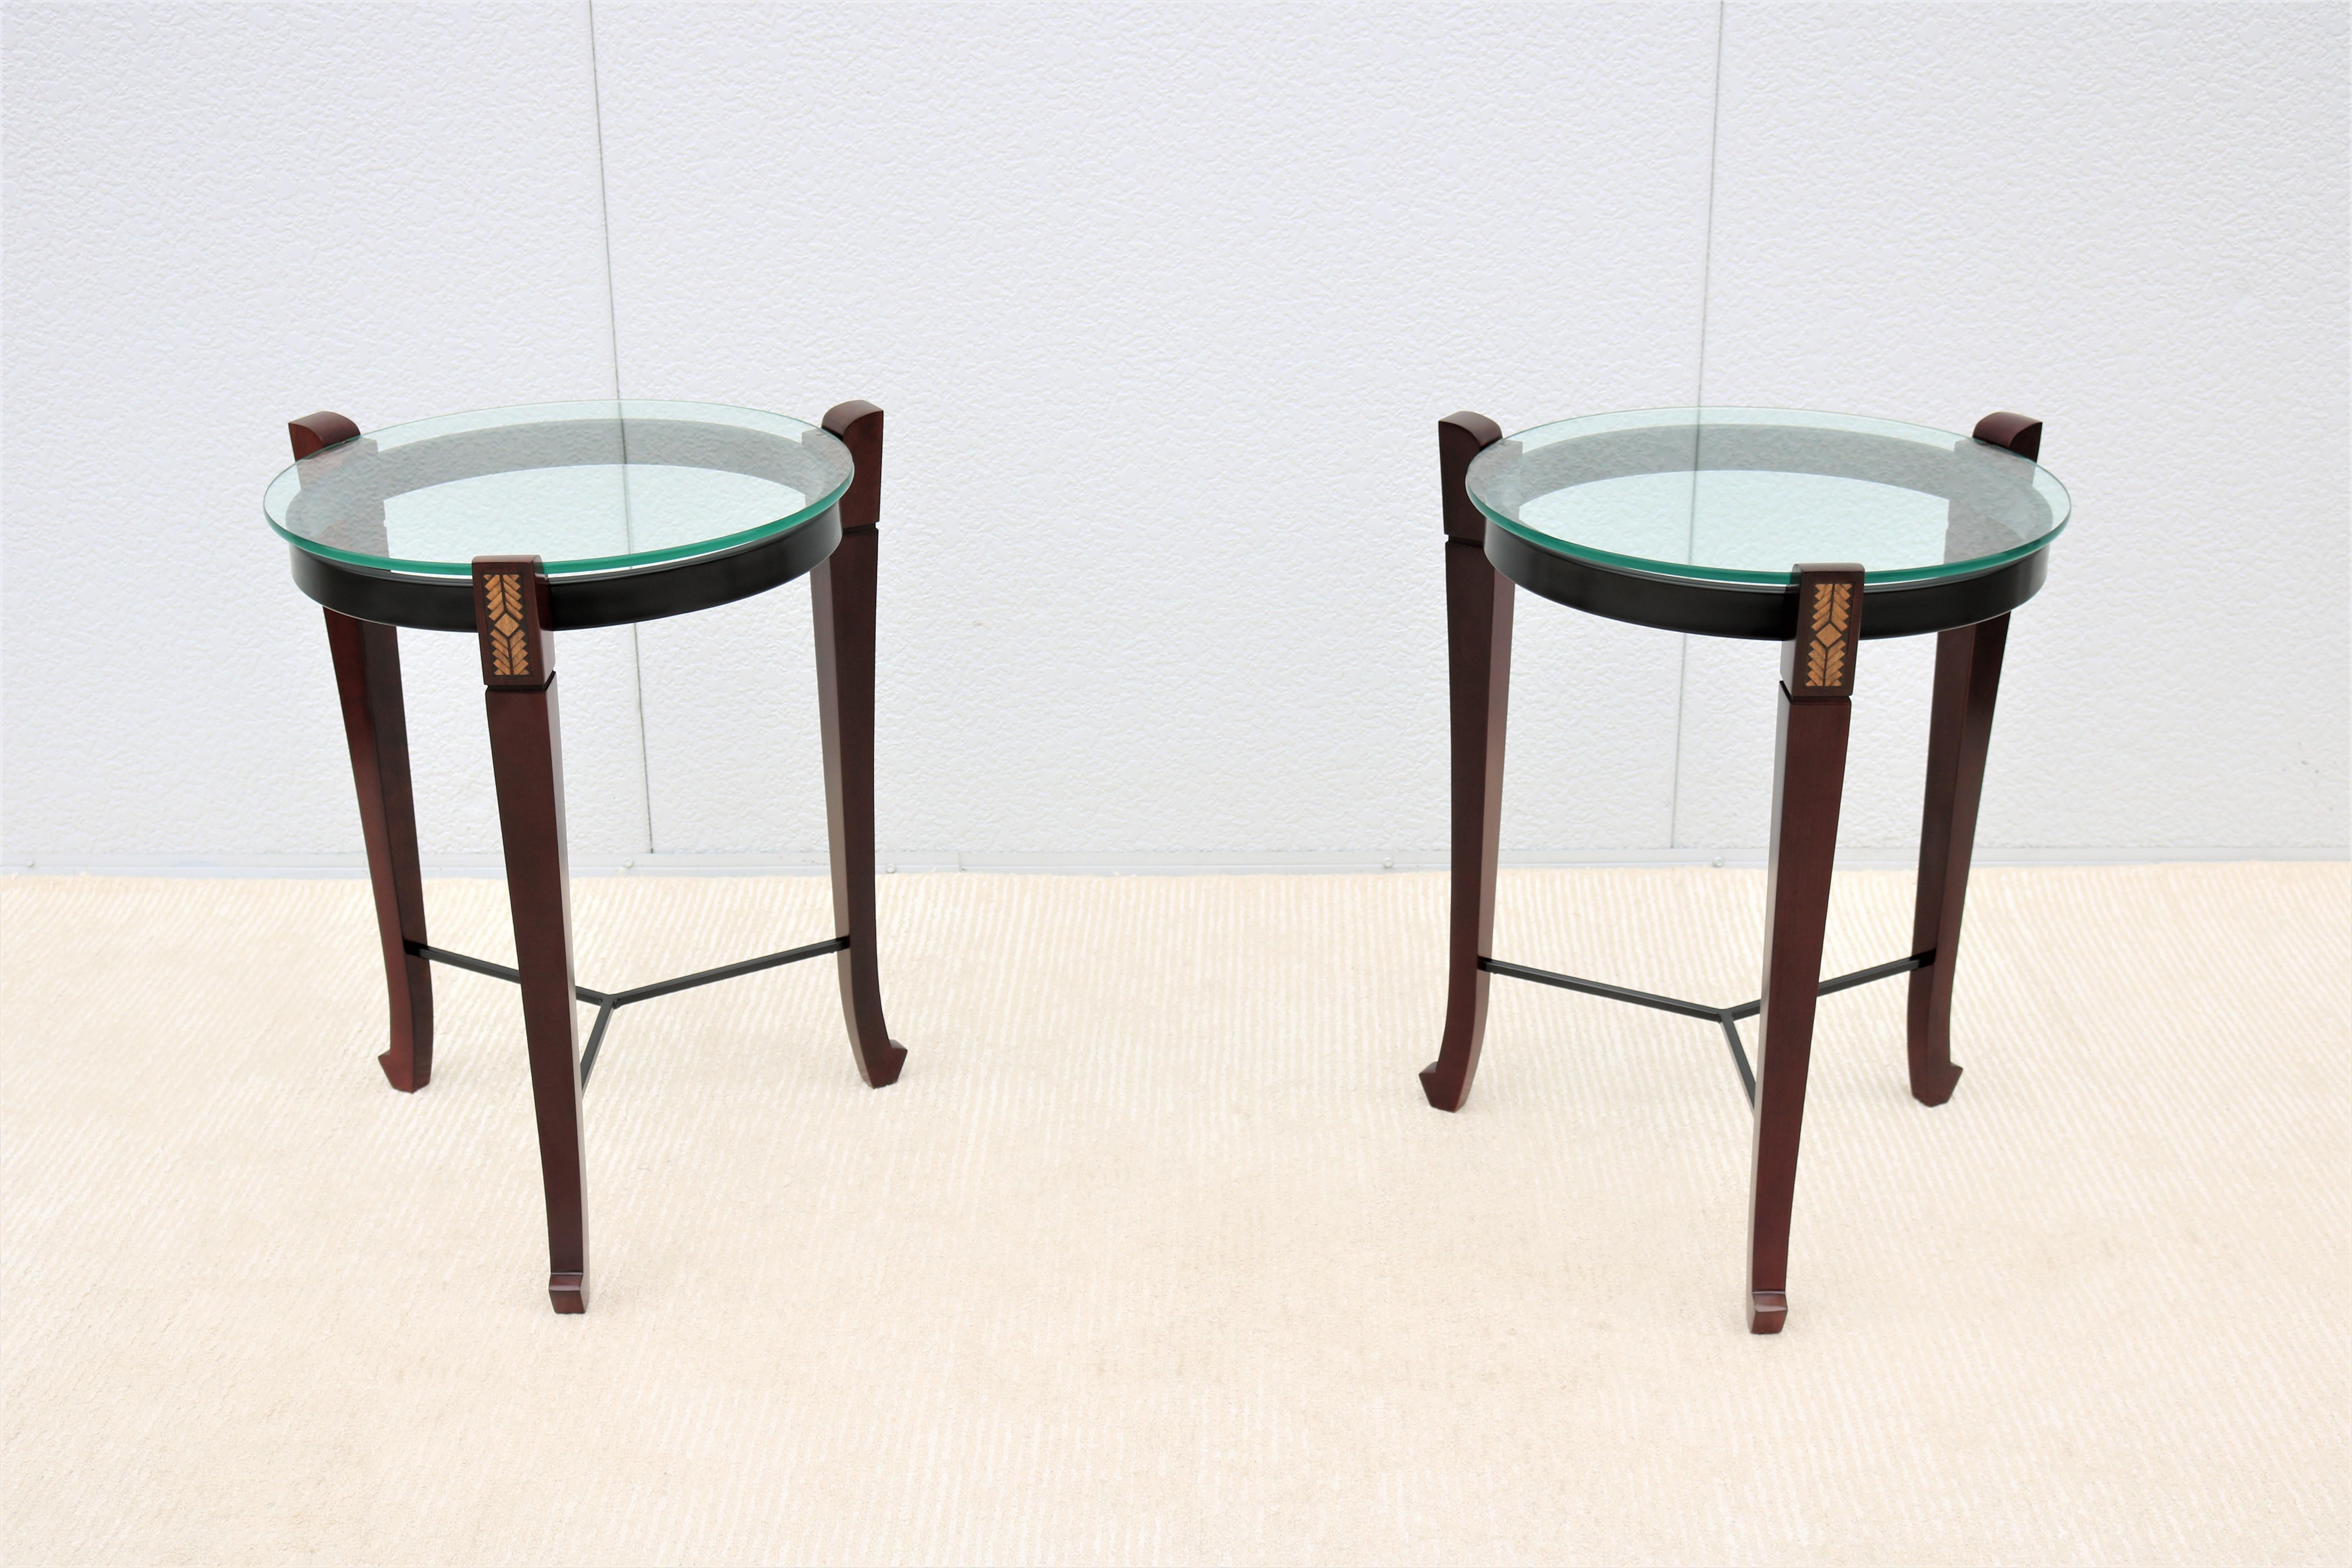 Fabuleuse paire vintage de tables d'appoint rondes traditionnelles, inspirées du design des 18e et 19e siècles.
Ces magnifiques tables allient le luxe que vous souhaitez à la fonctionnalité dont vous avez besoin.
La base en bois et en métal crée un